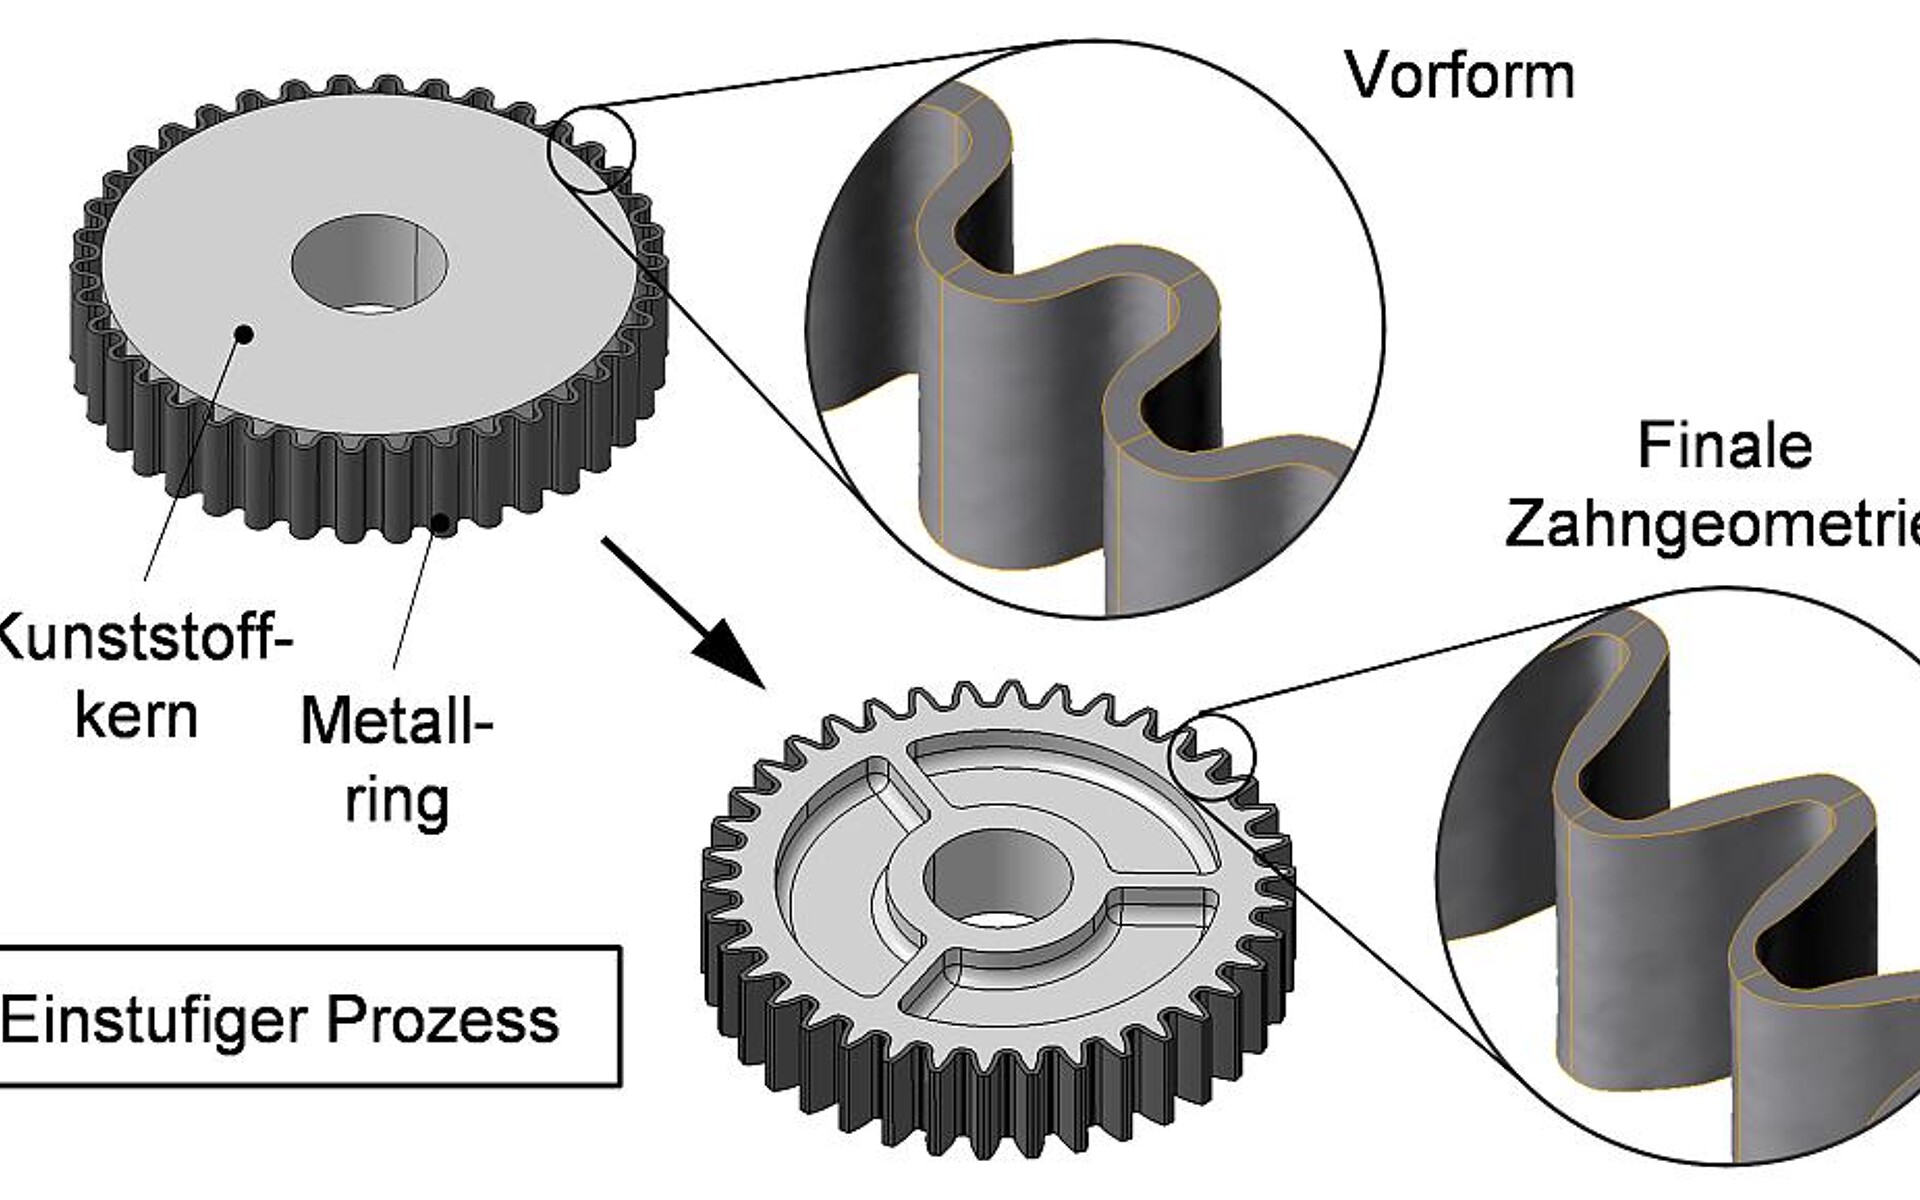 Beispiel für eine Hybridumformung: Durch Prägen eines Kunststoffkerns mit einem umliegenden metallischen Preform-Ring entsteht ein Zahnrad. Bei diesem Prozess ändert sich auch die Geometrie des metallischem Preforms. (Abb.: IKT)